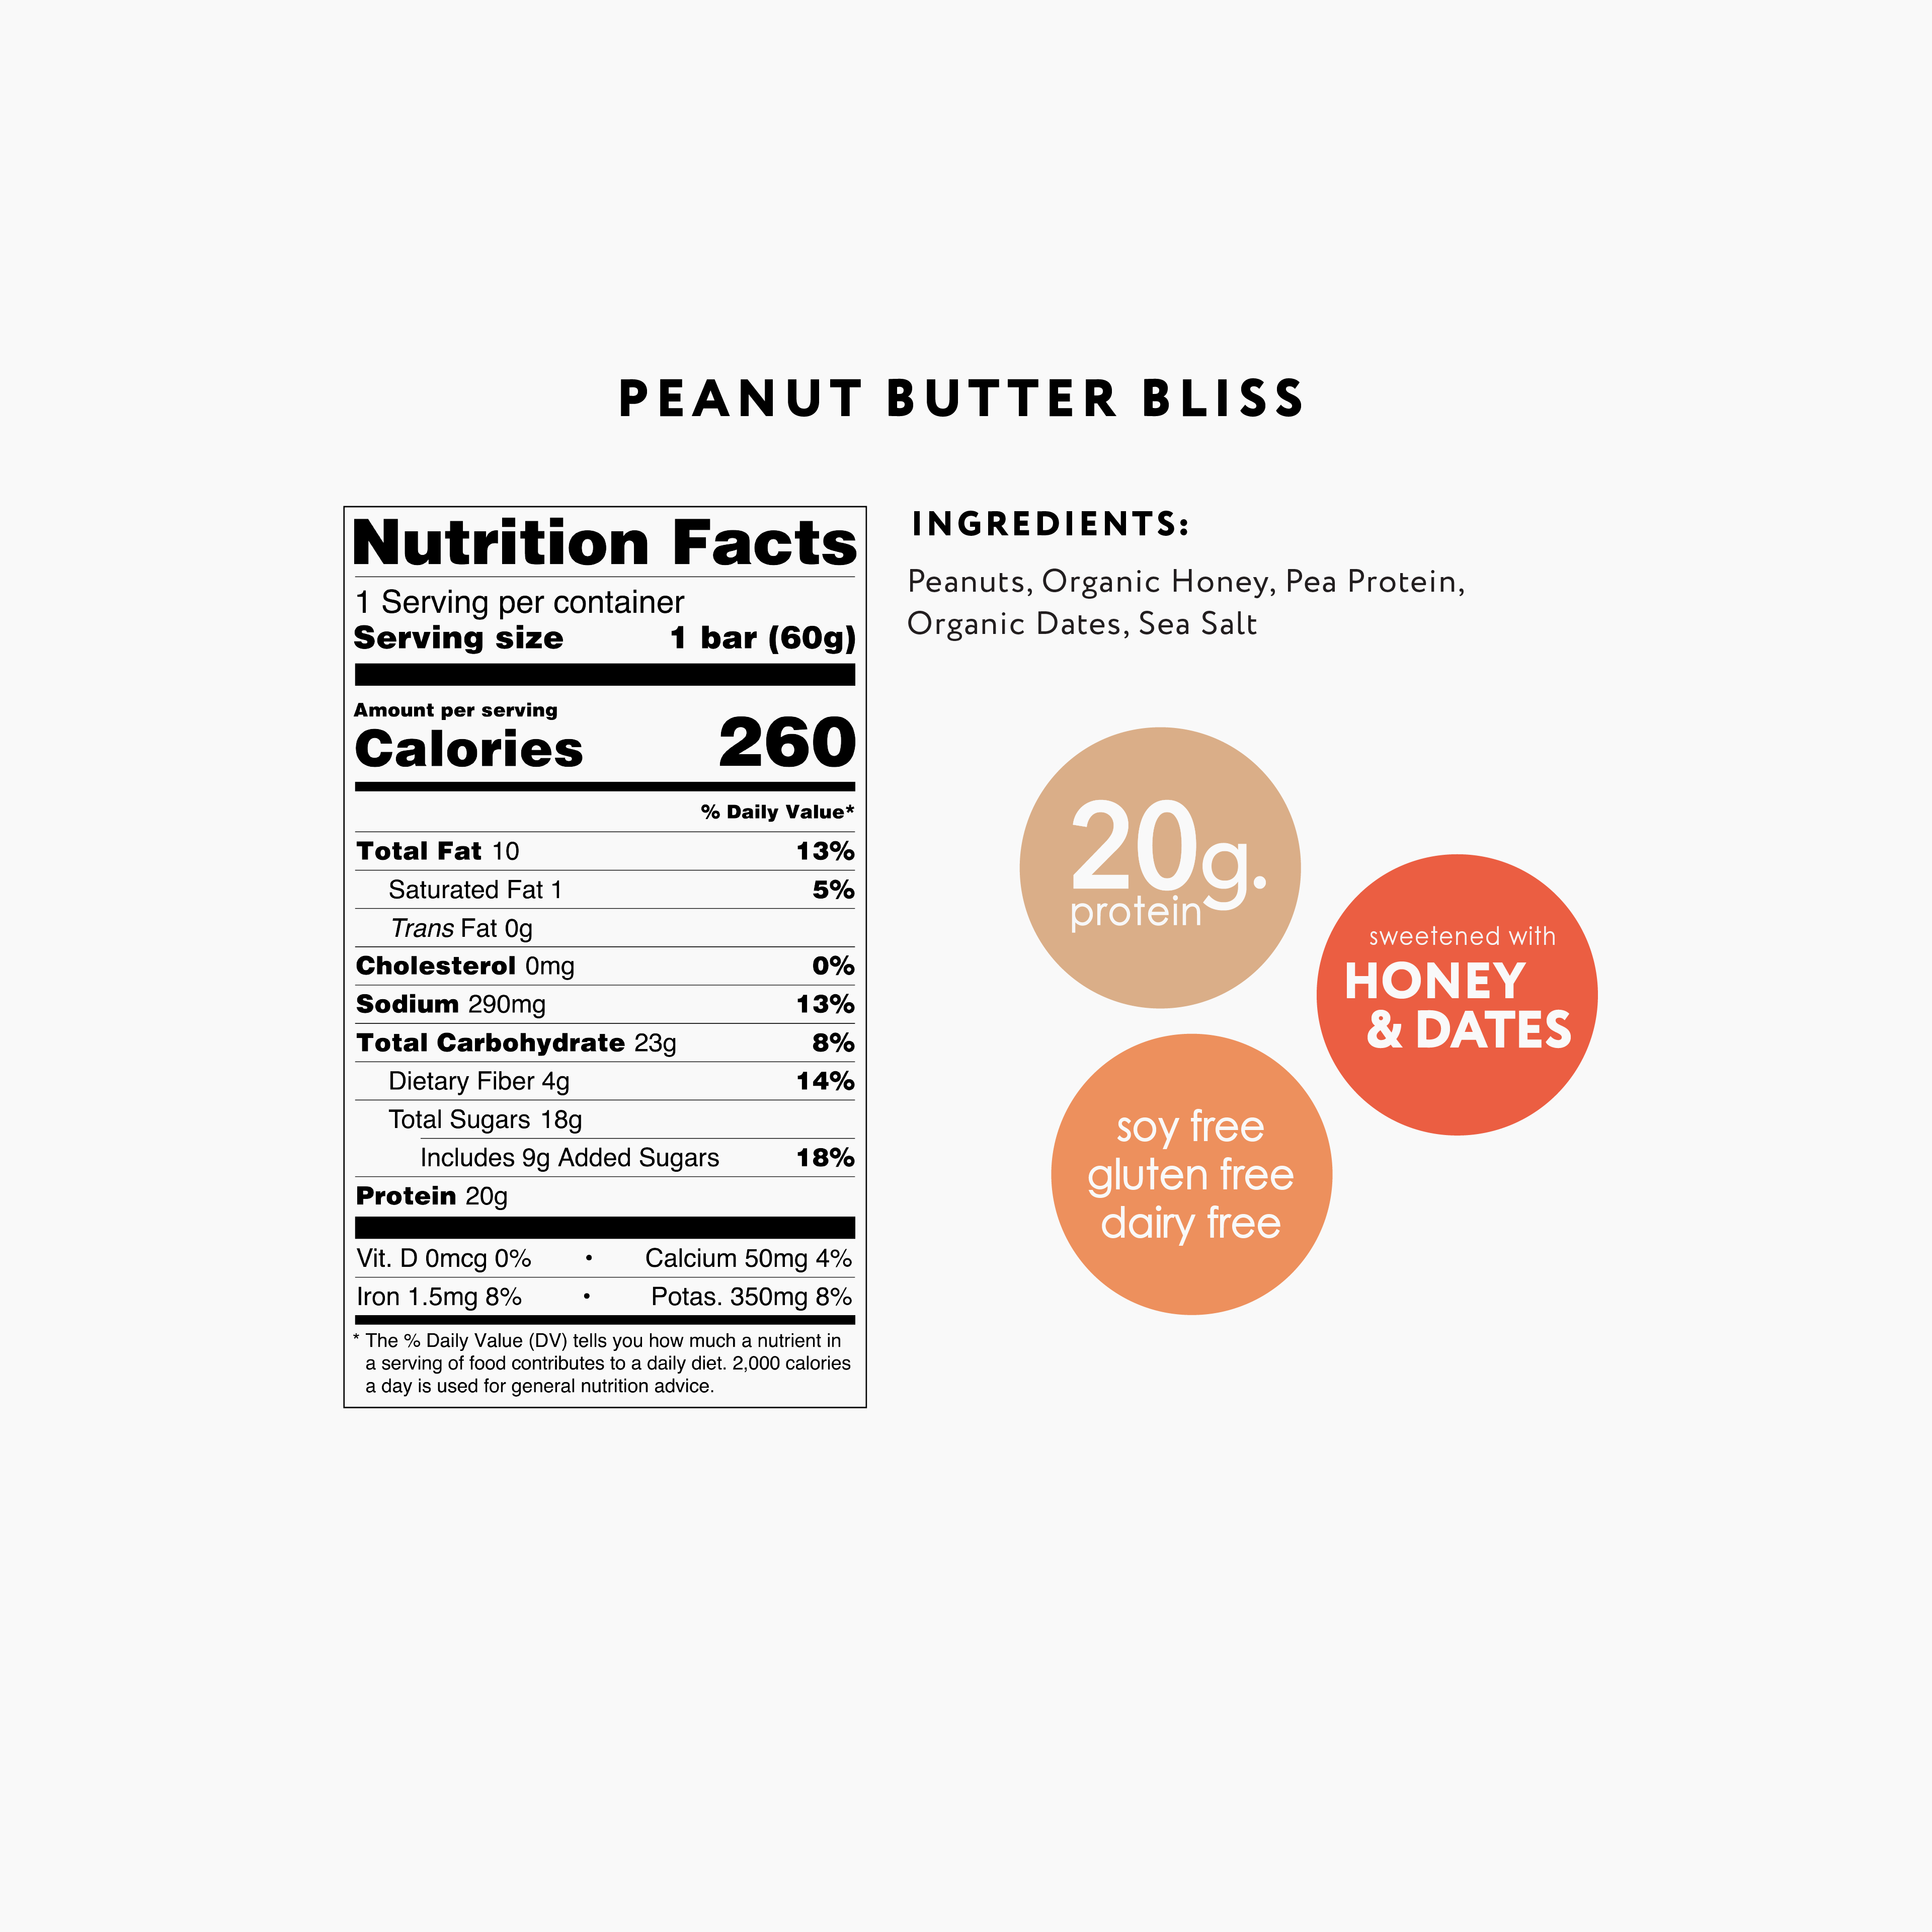 Peanut Butter Bliss